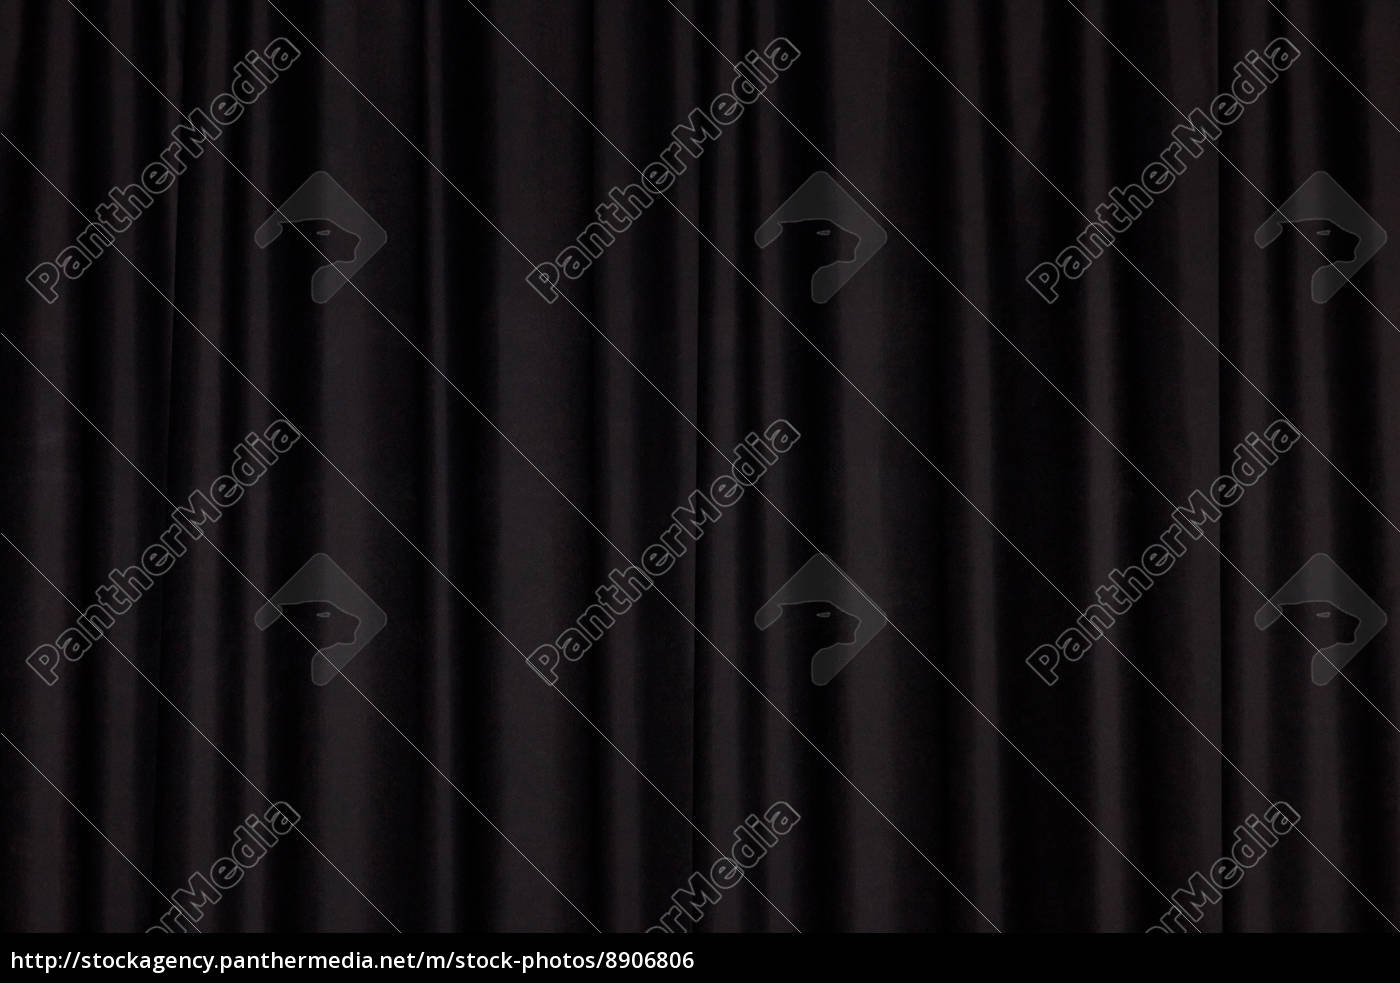 tenda nera - Stockphoto #8906806  Comprate Immagini RF da Panthermedia